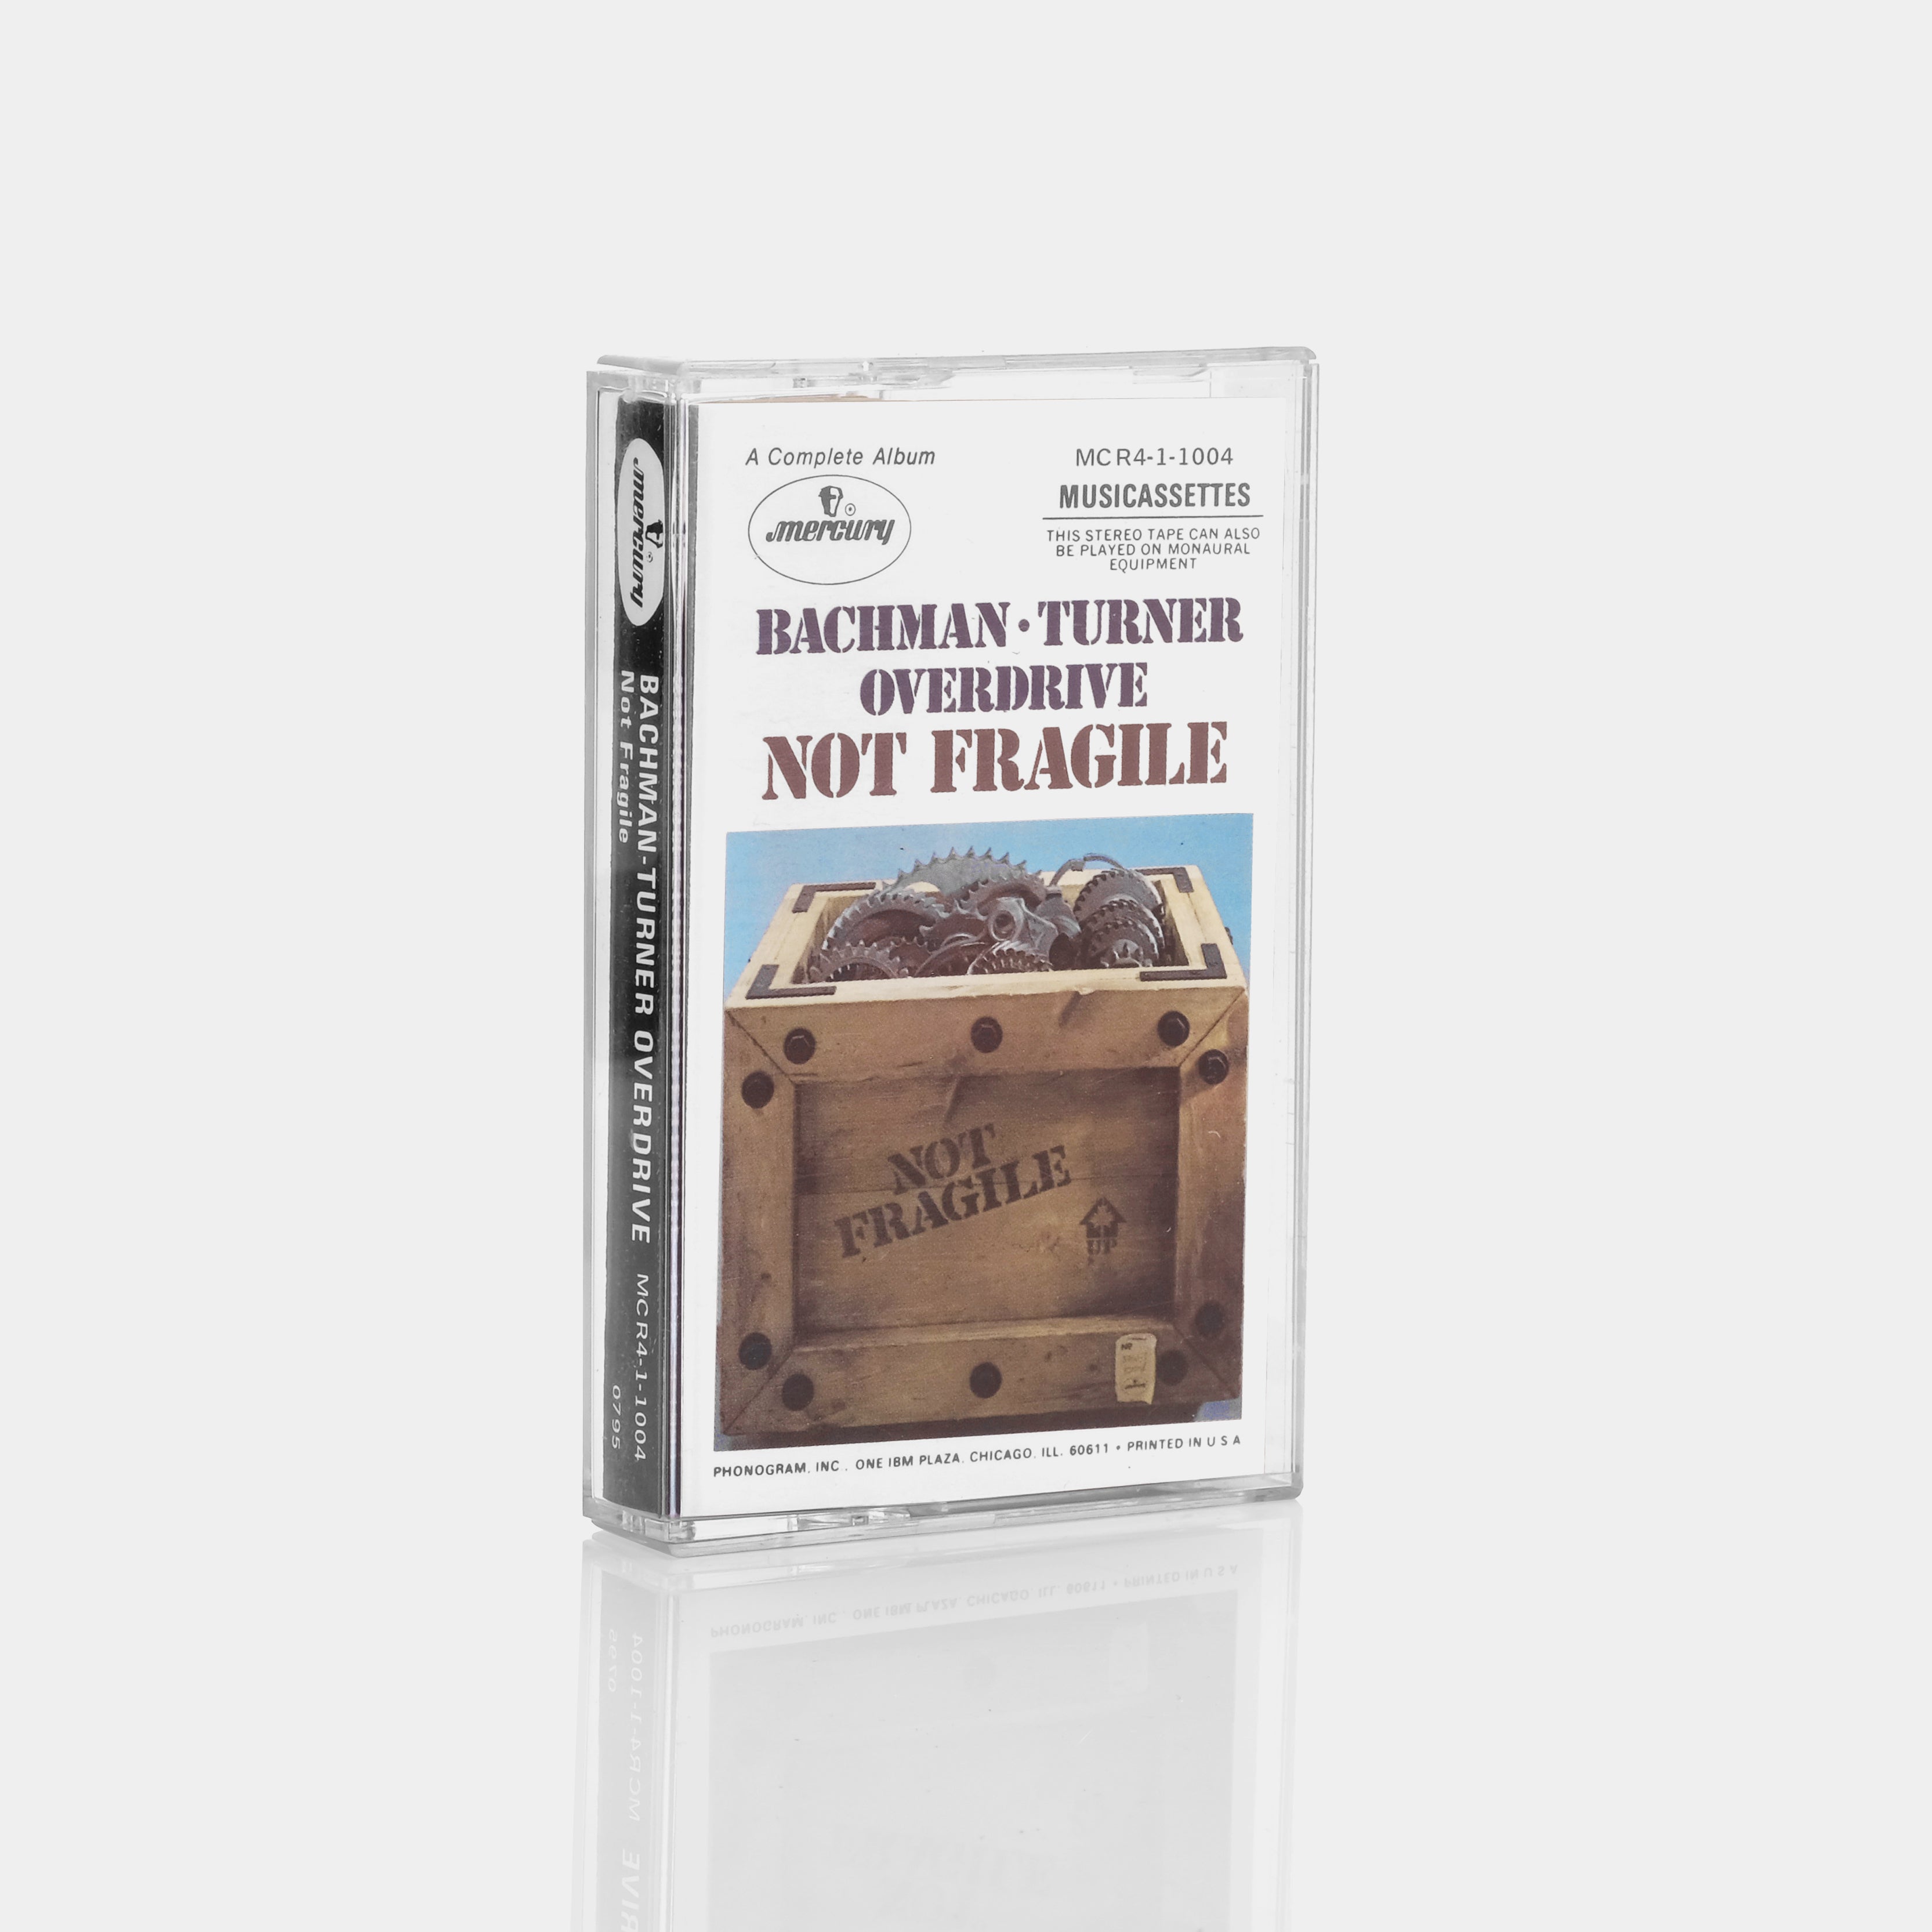 Bachman-Turner Overdrive - Not Fragile Cassette Tape